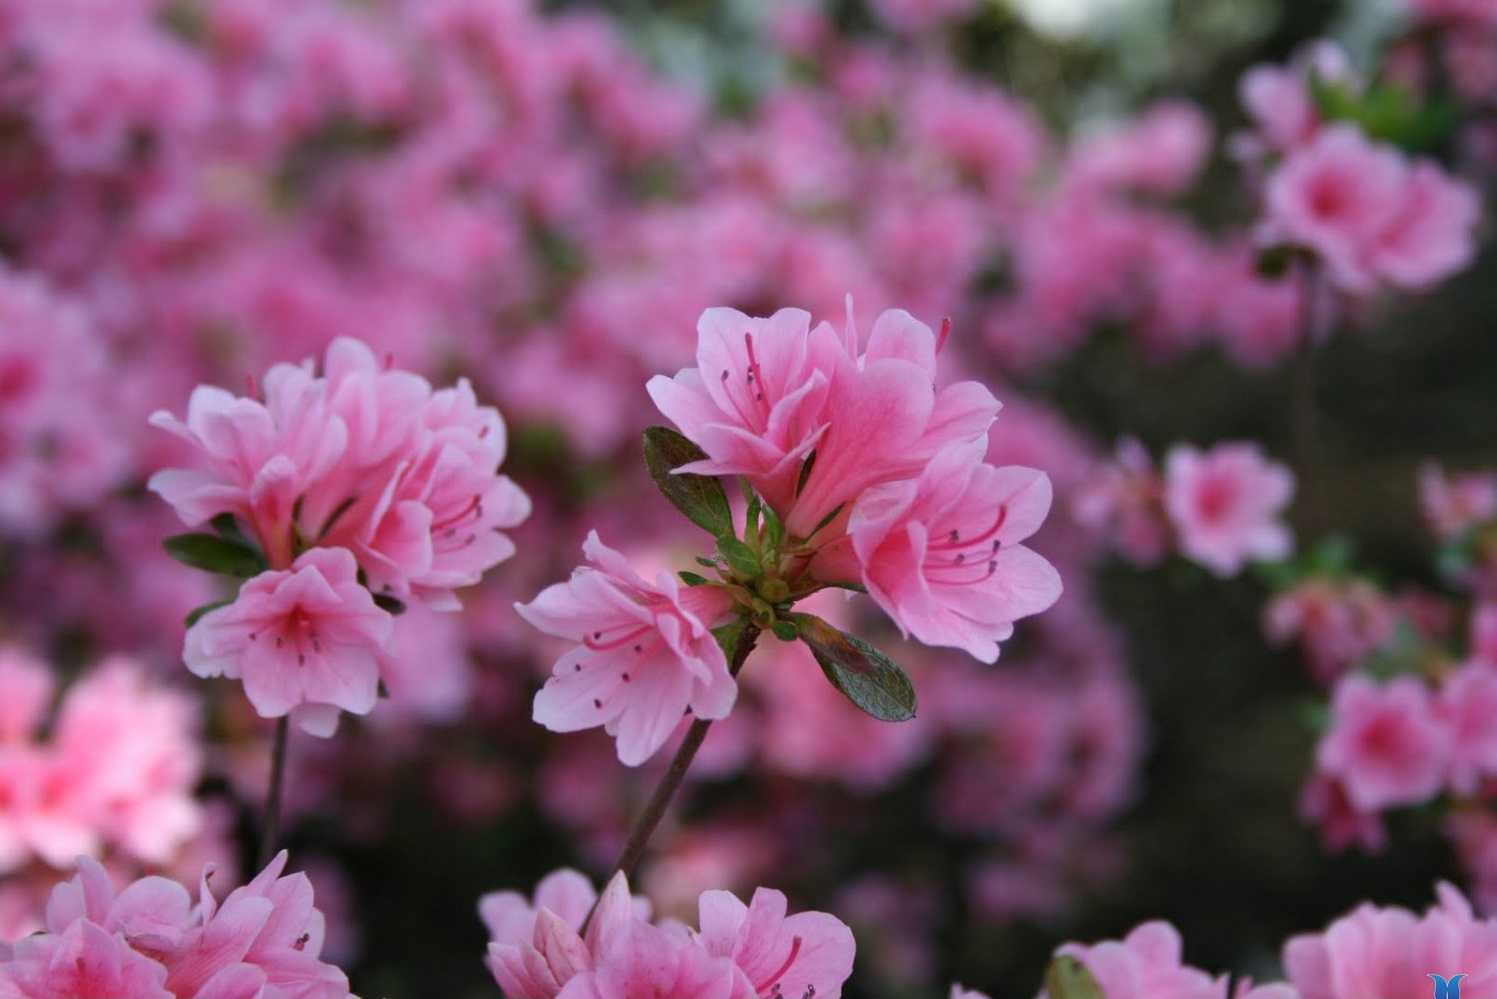 Tìm hiểu tháng 4 là hoa gì và ý nghĩa của hoa đó trong văn hóa địa phương